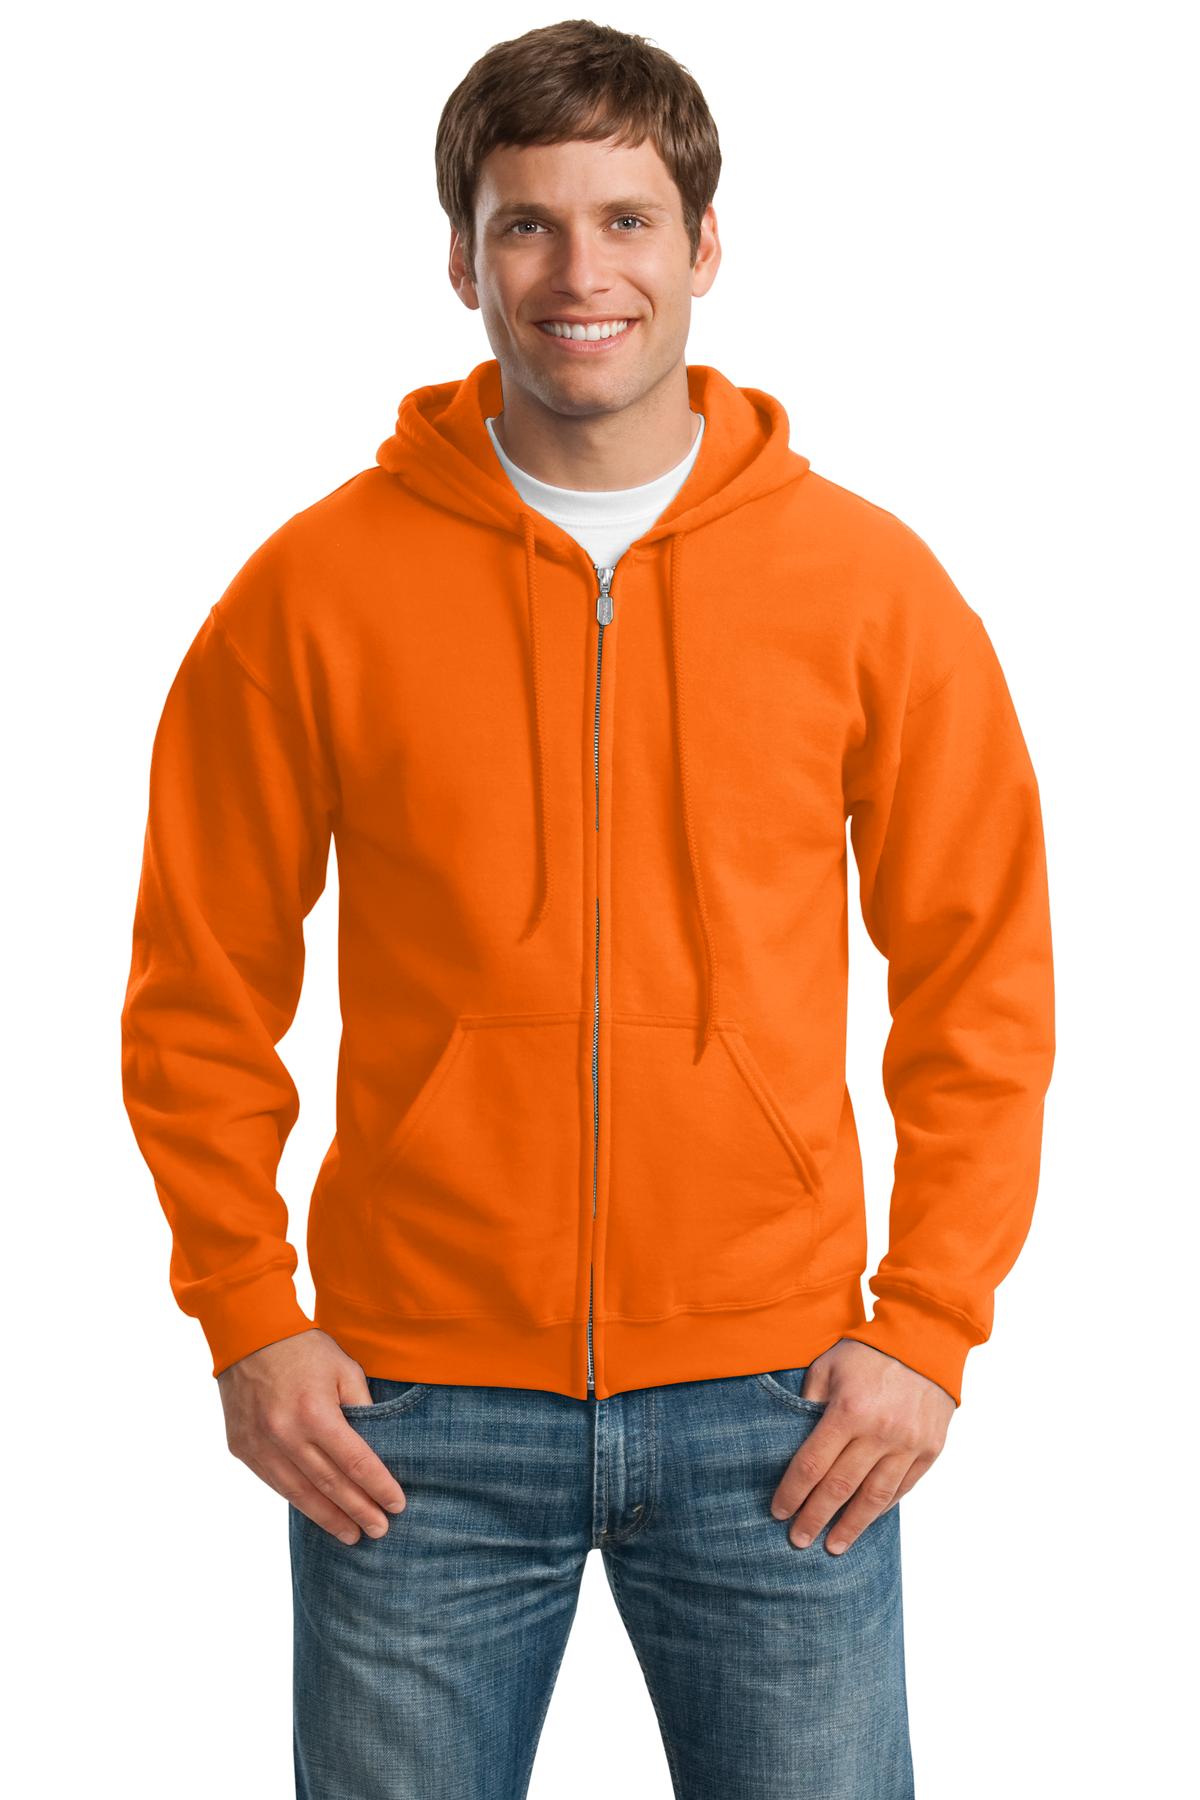 Sweatshirts/Fleece S. Orange Gildan